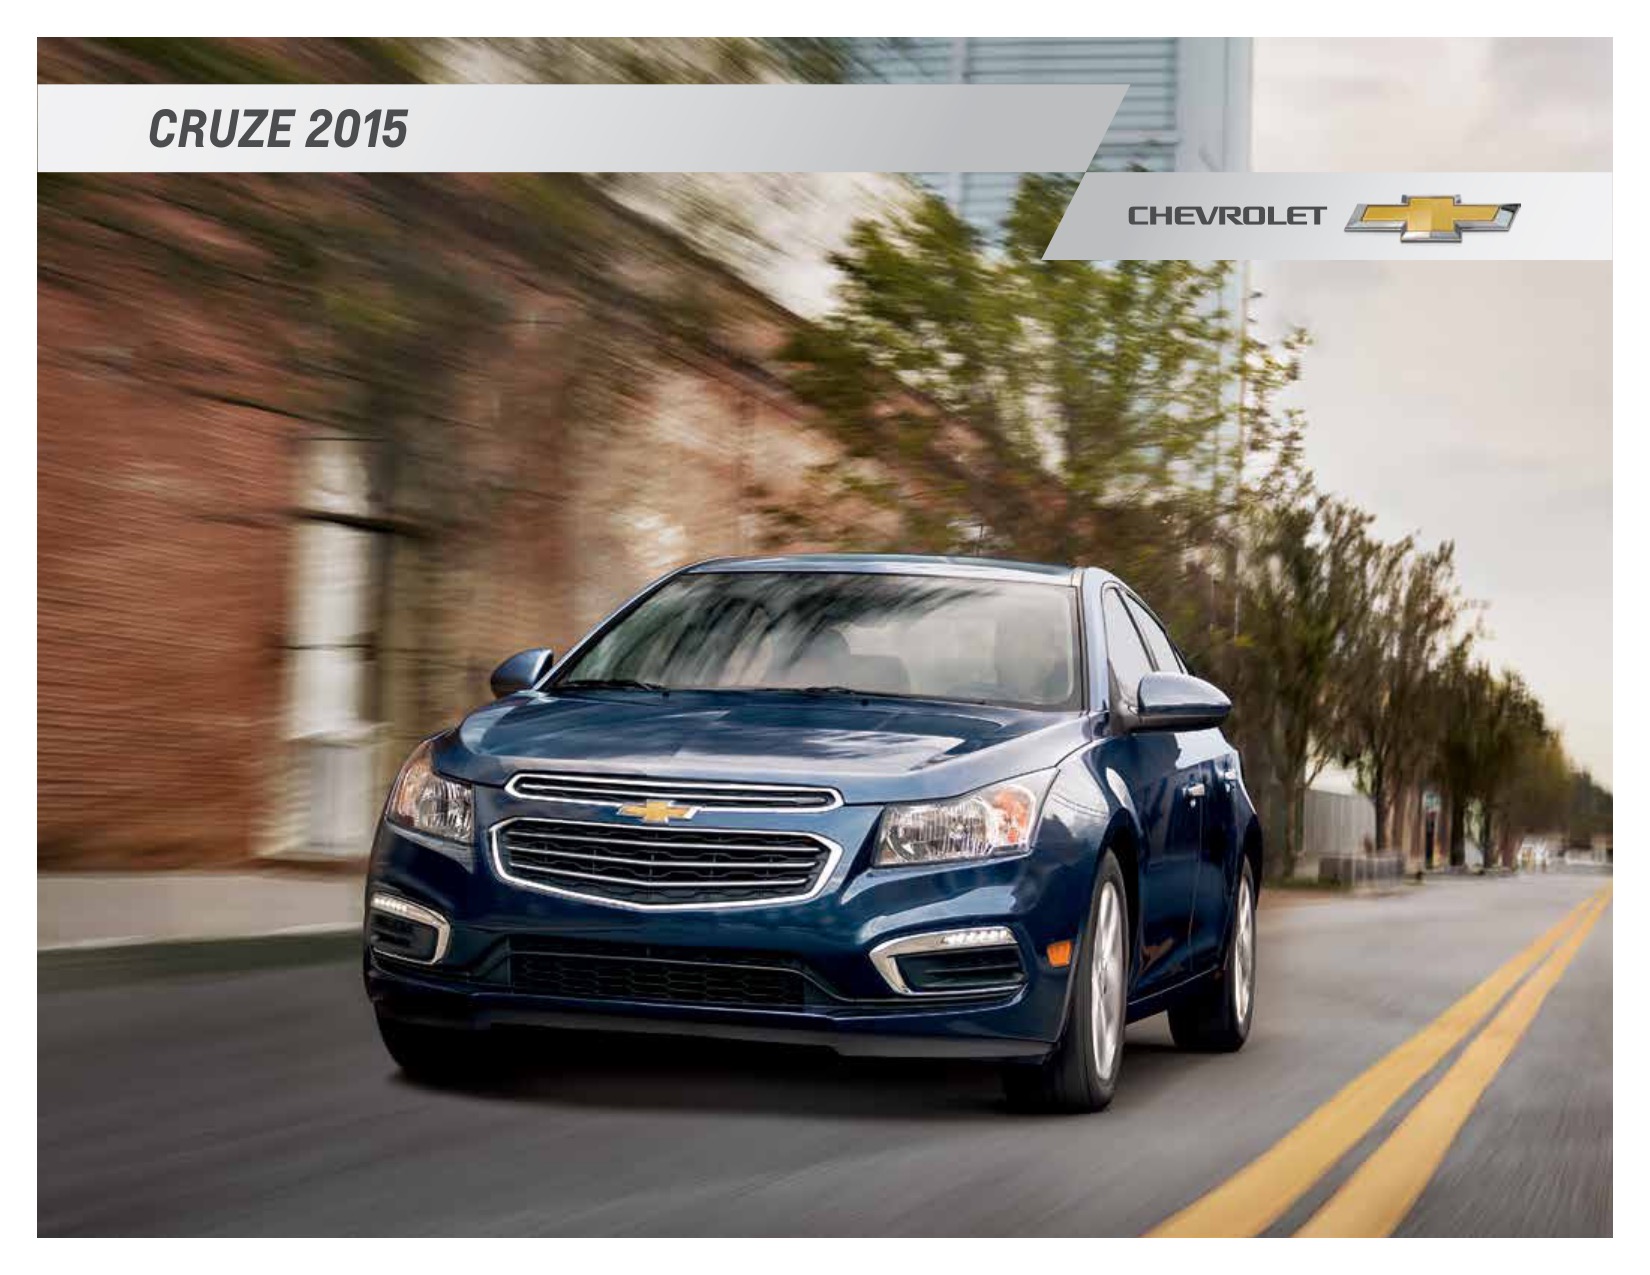 2015 Chevrolet Cruze Brochure